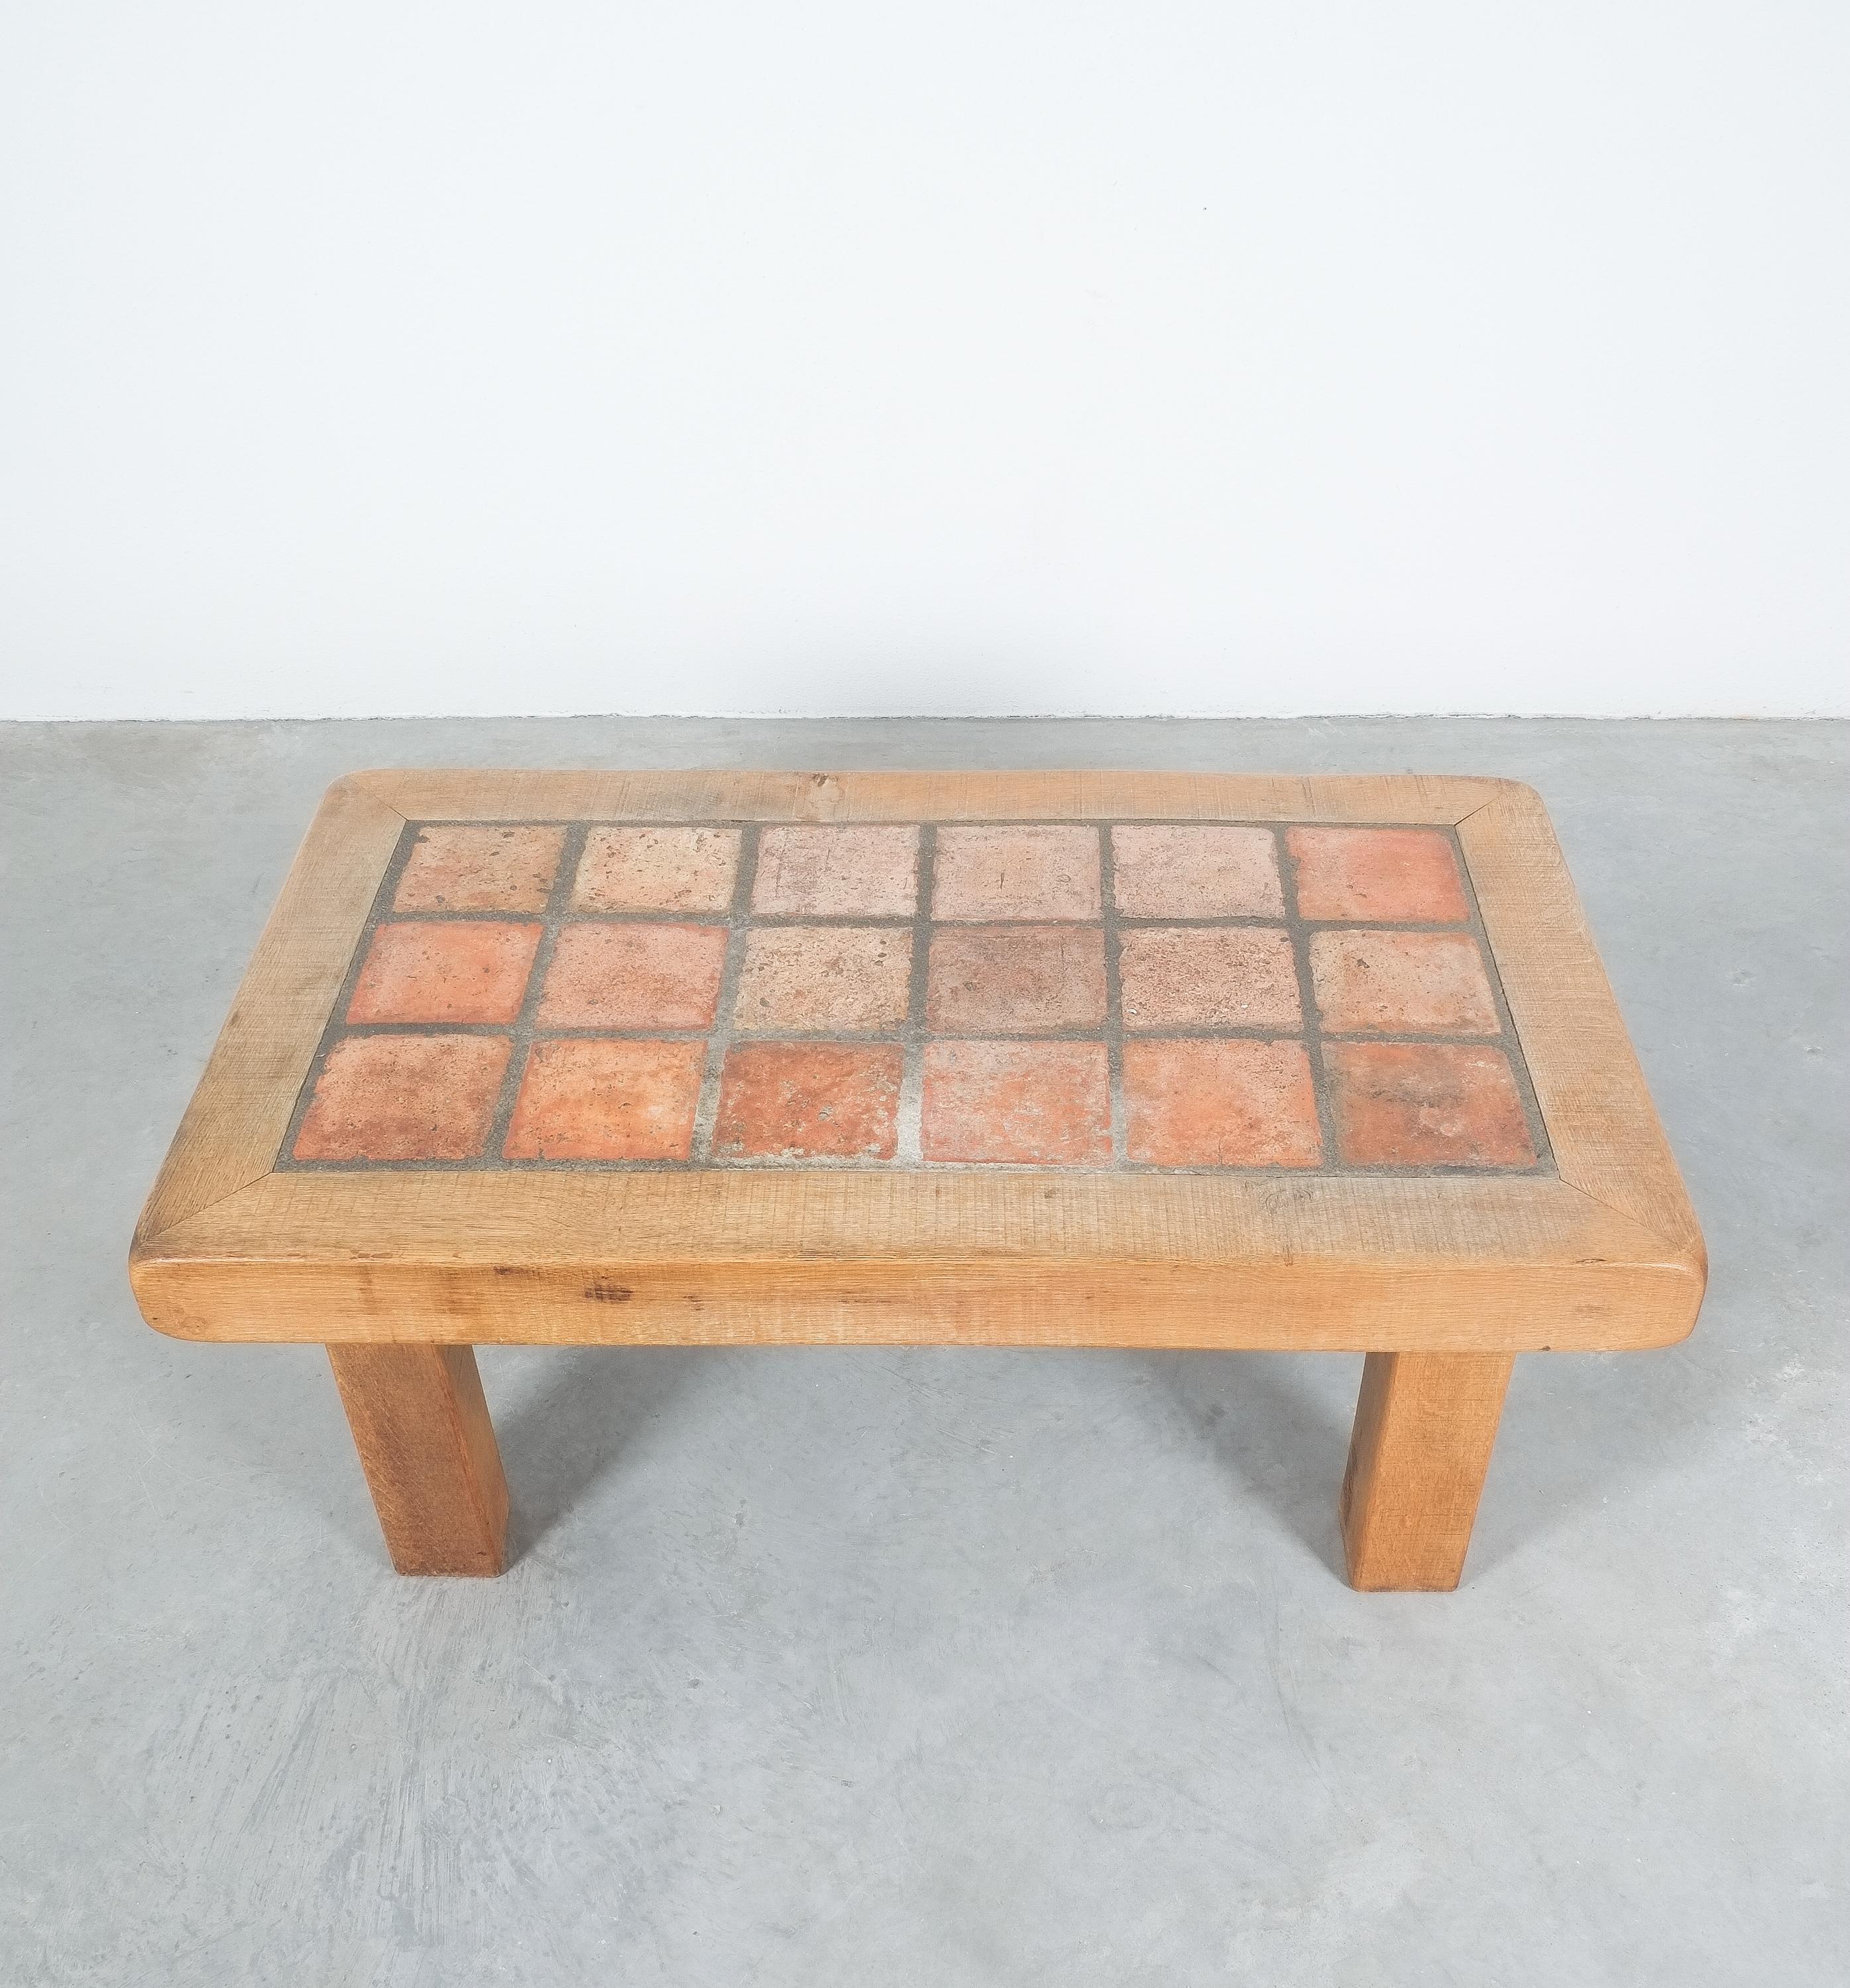 terracotta tile table